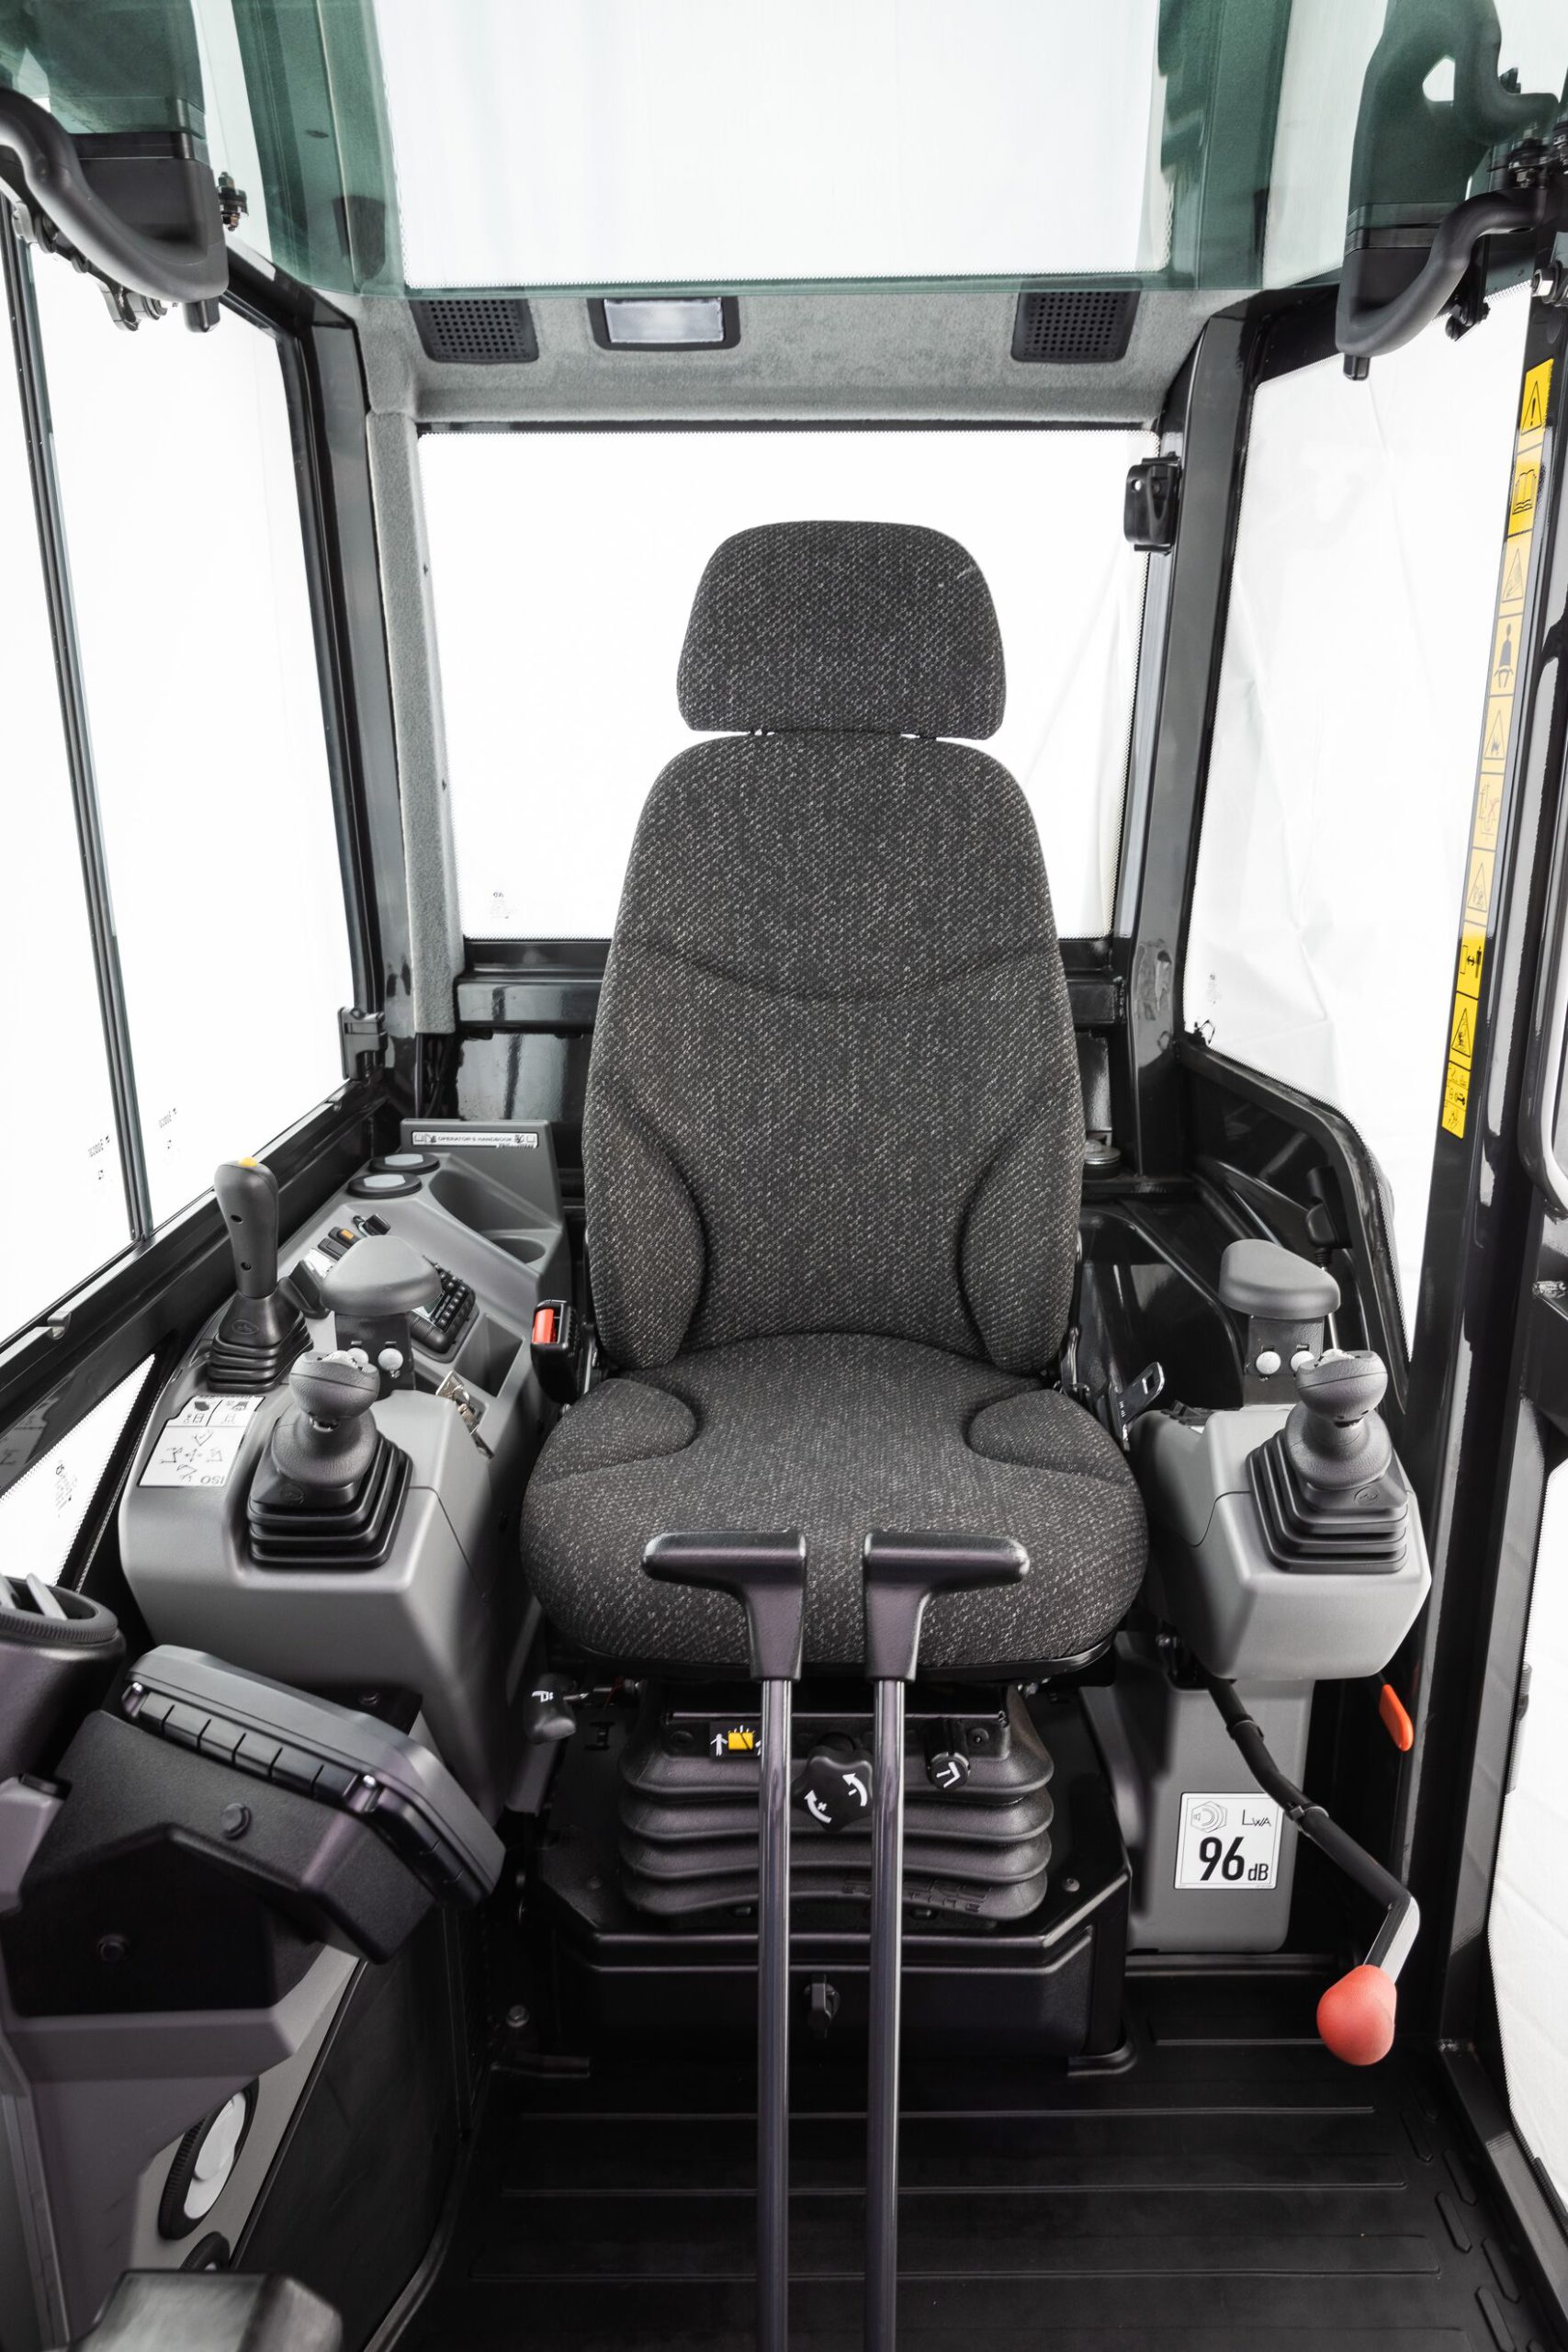 L'ergonomia del posto guida del nuovo E88 è stata pensata in funzione della sicurezza operativa e dell'aumento di efficienza